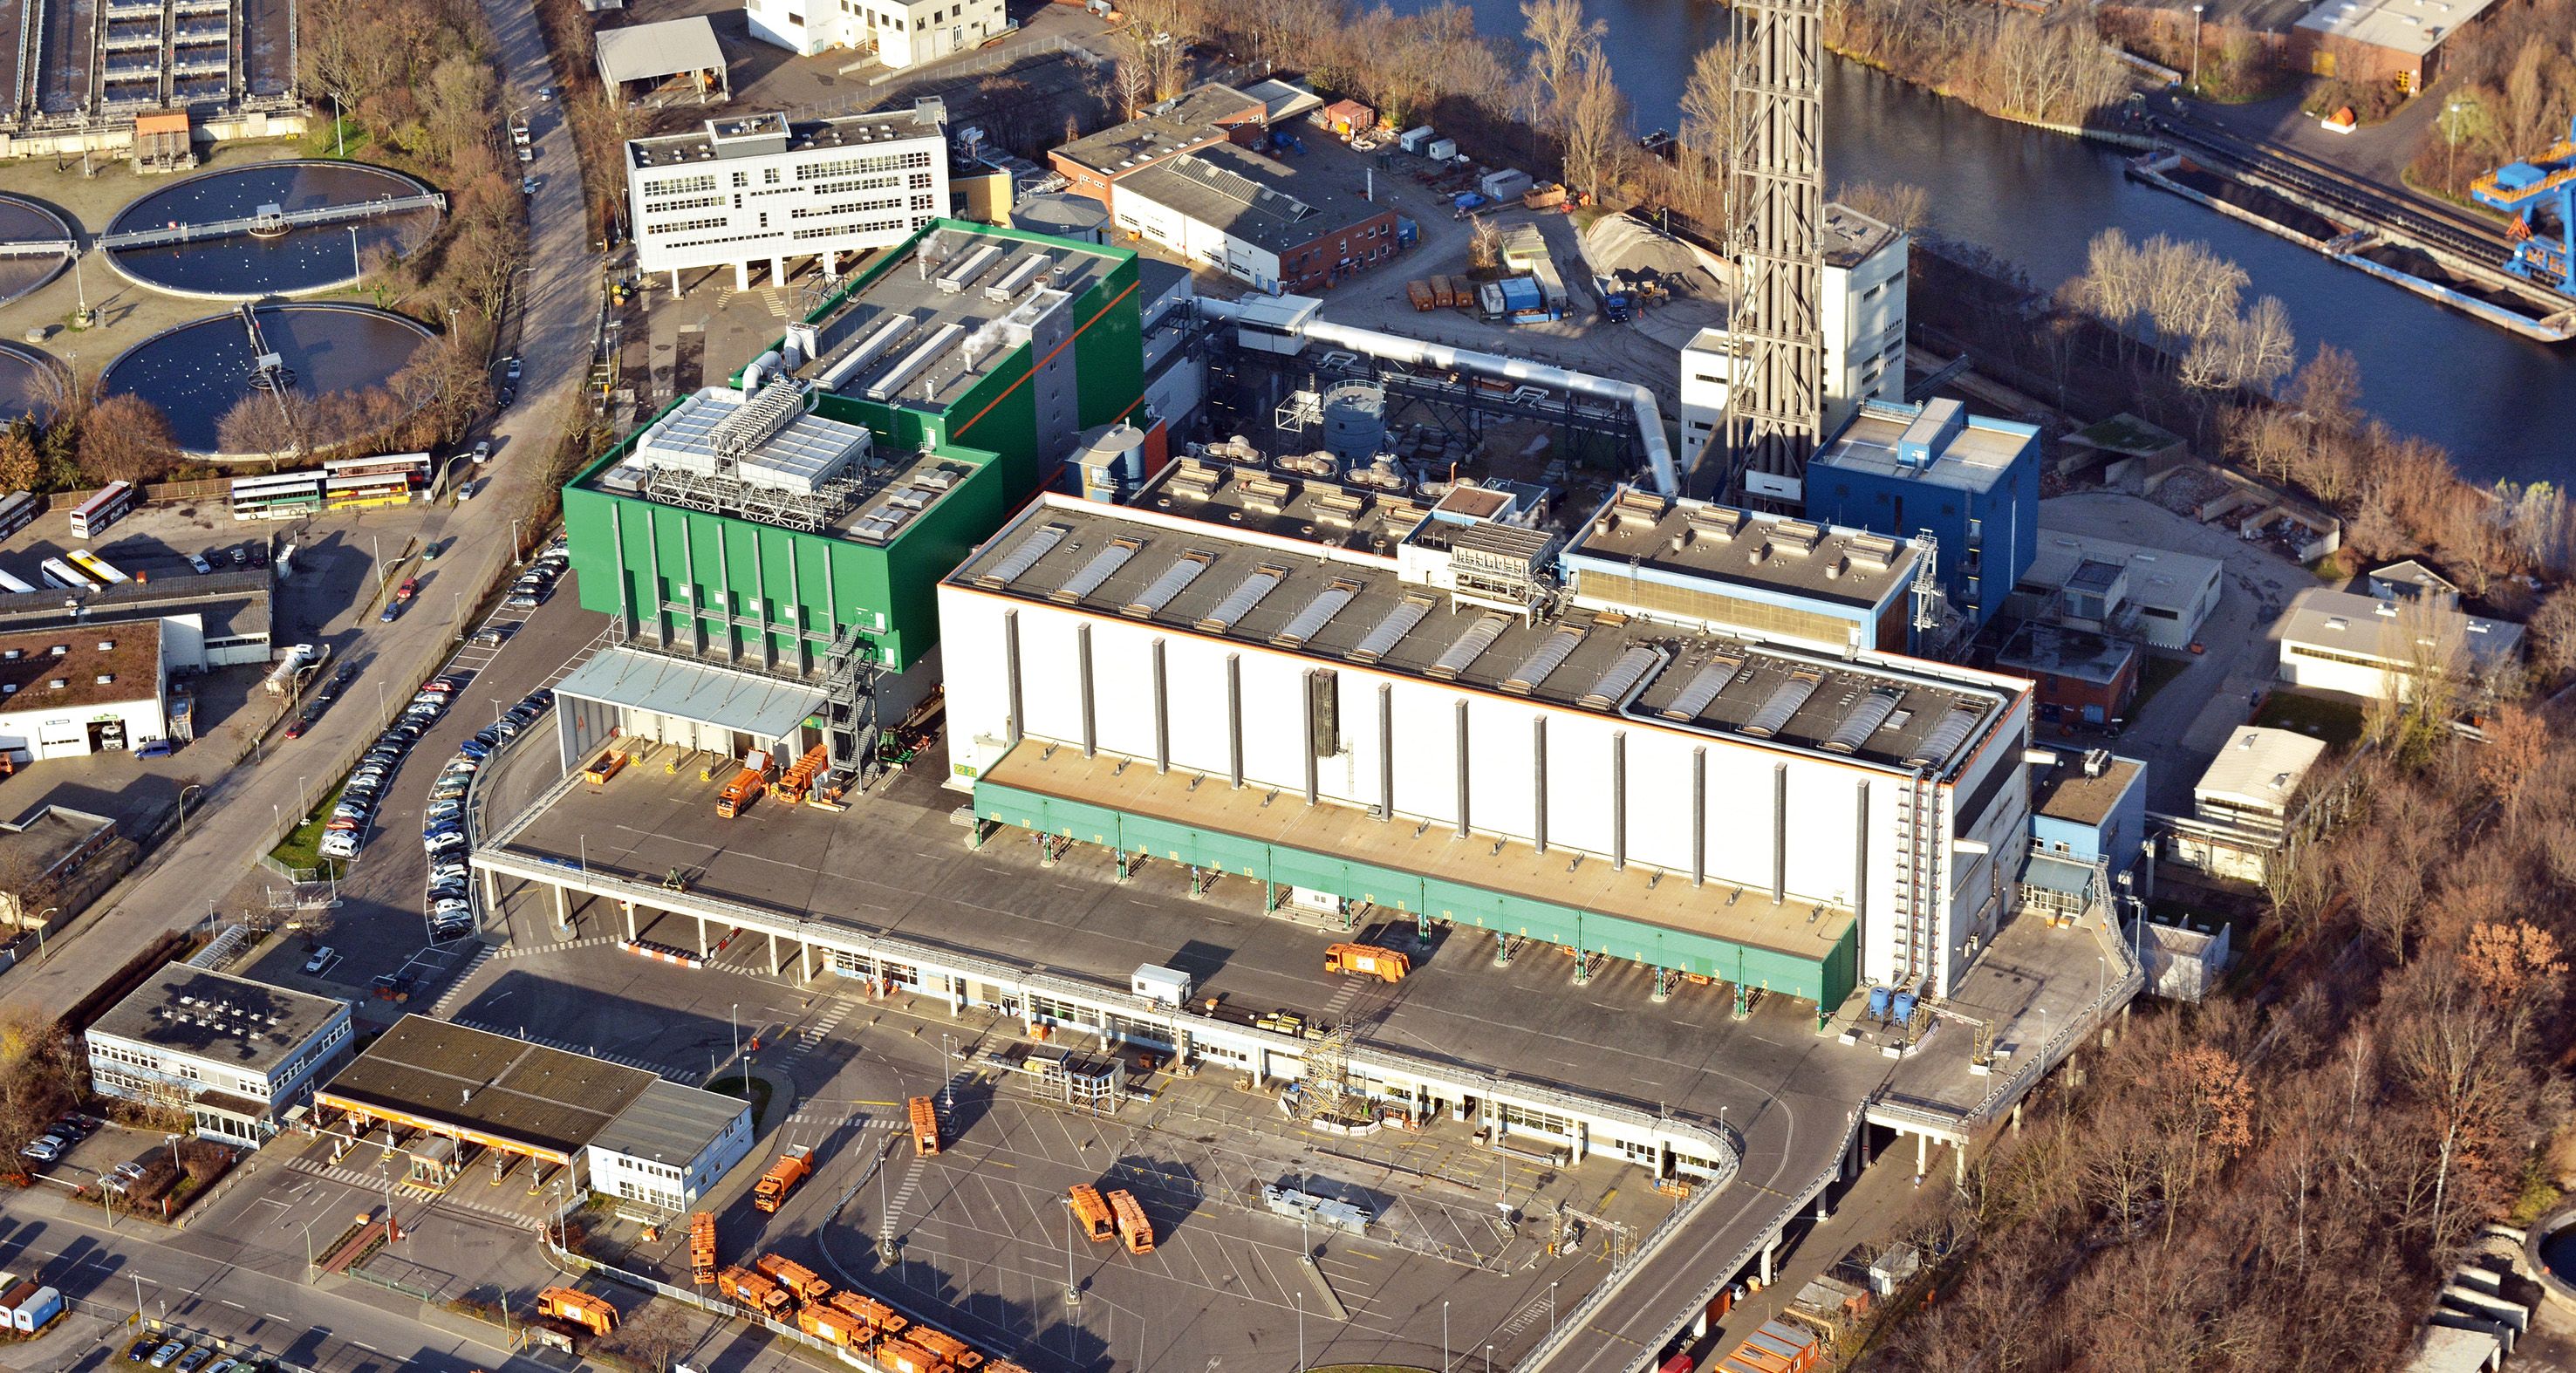 BSR-Müllheizkraftwerk in Berlin-Ruhleben aus der Luft